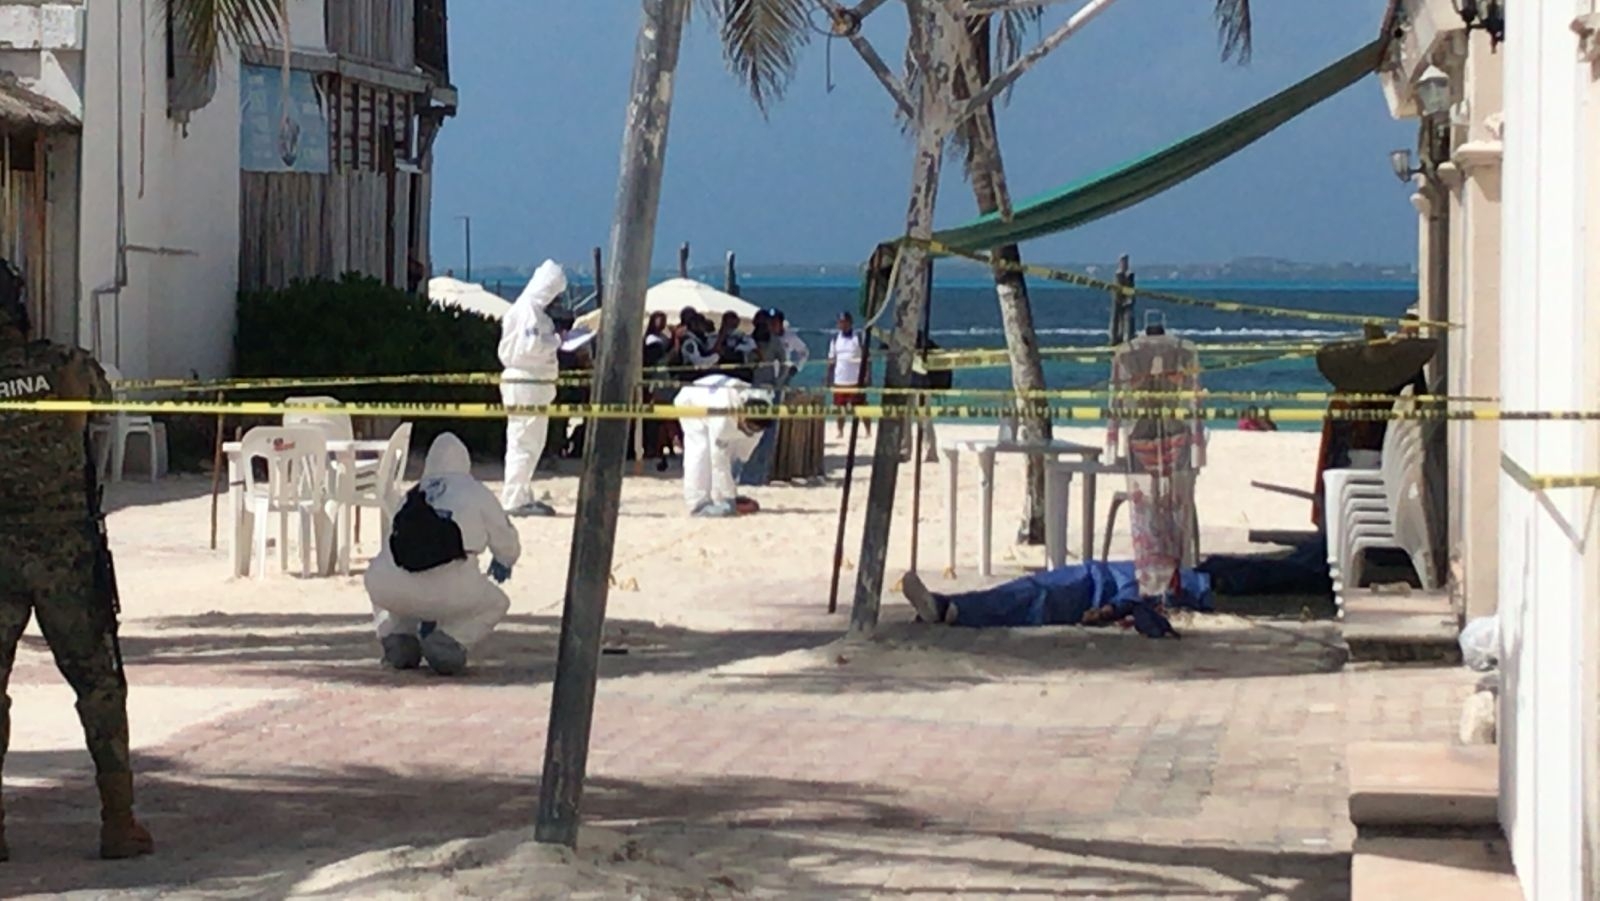 Balean a dos hombres en Playa Tortugas de la Zona hotelera de Cancún